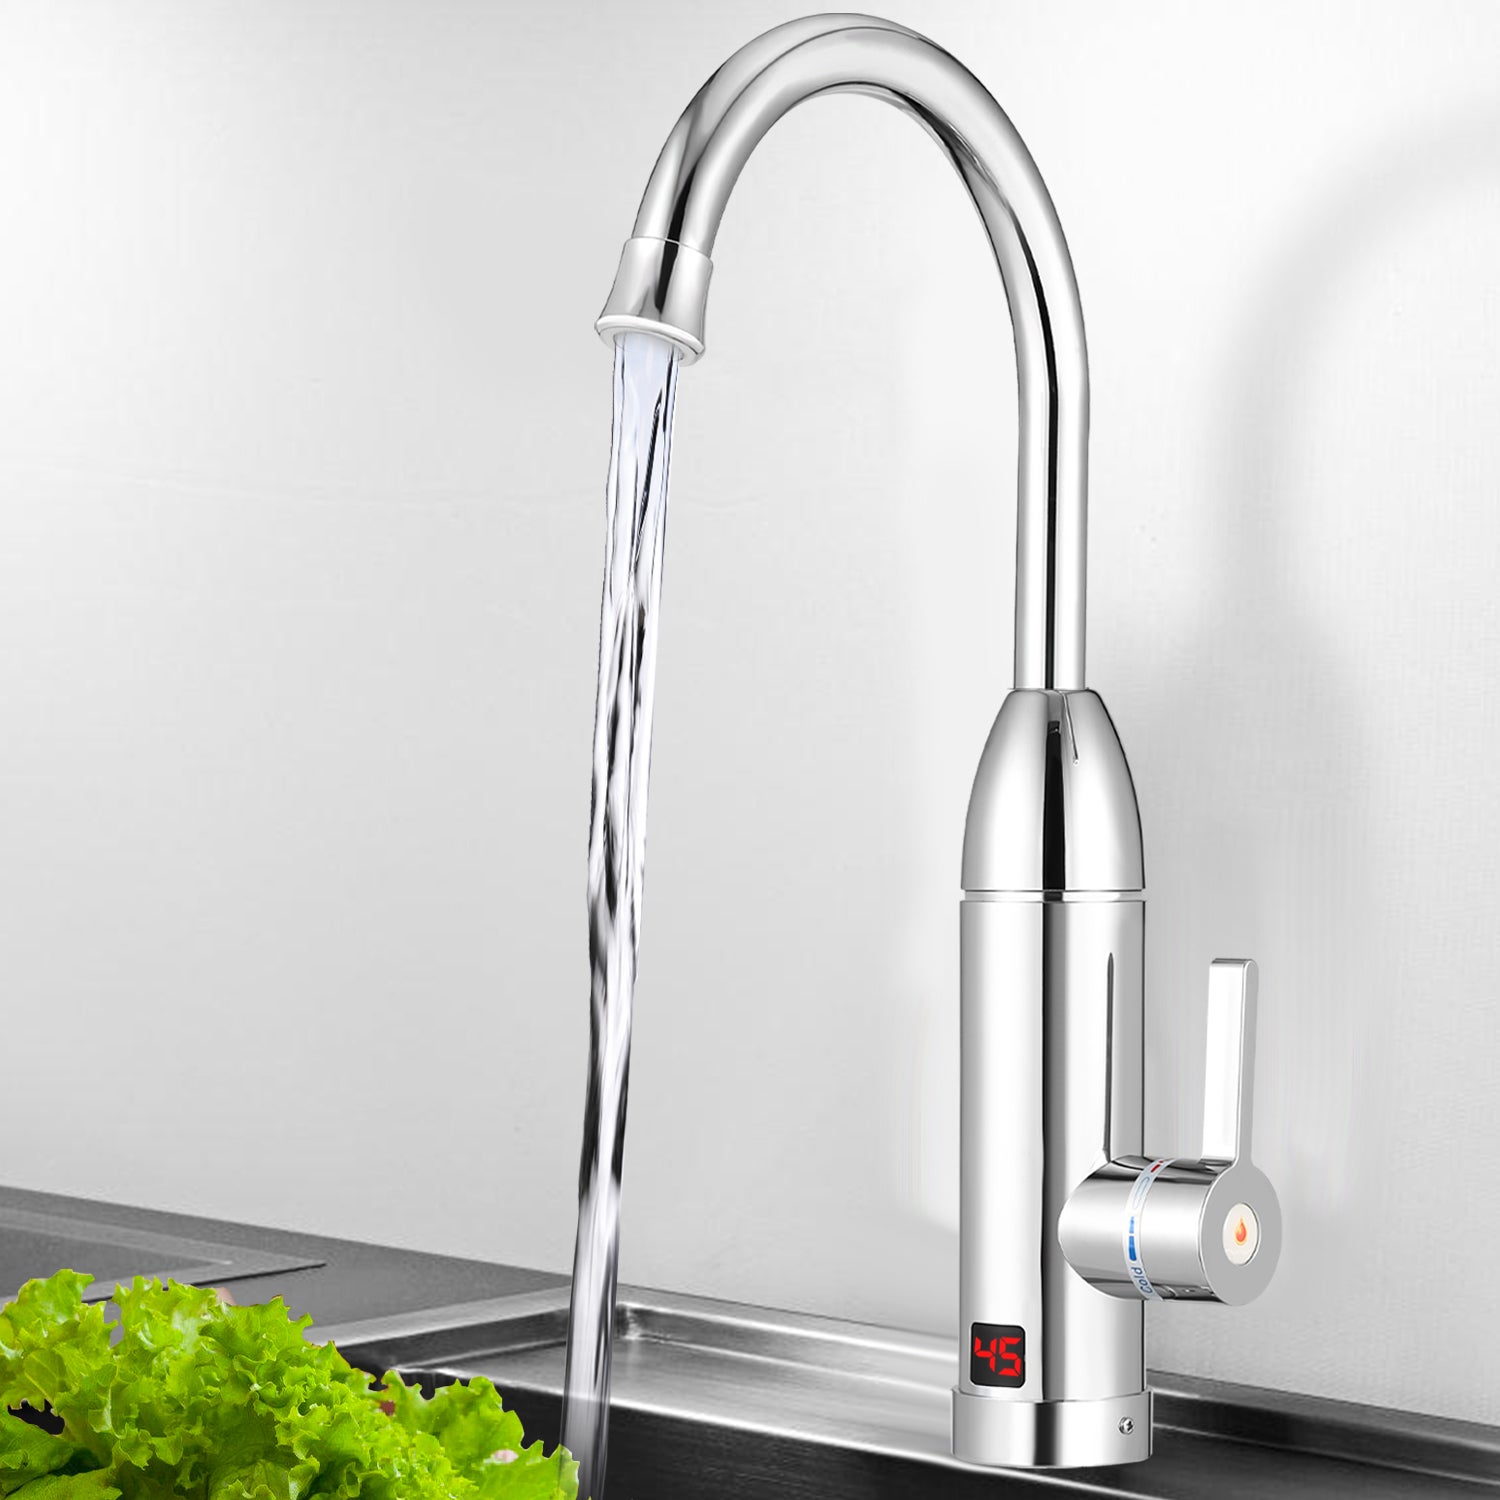 Compre Torneira de água quente instantânea 3000W elétrica Aquecedor torneira  com display digital LED cozinha Banheiro